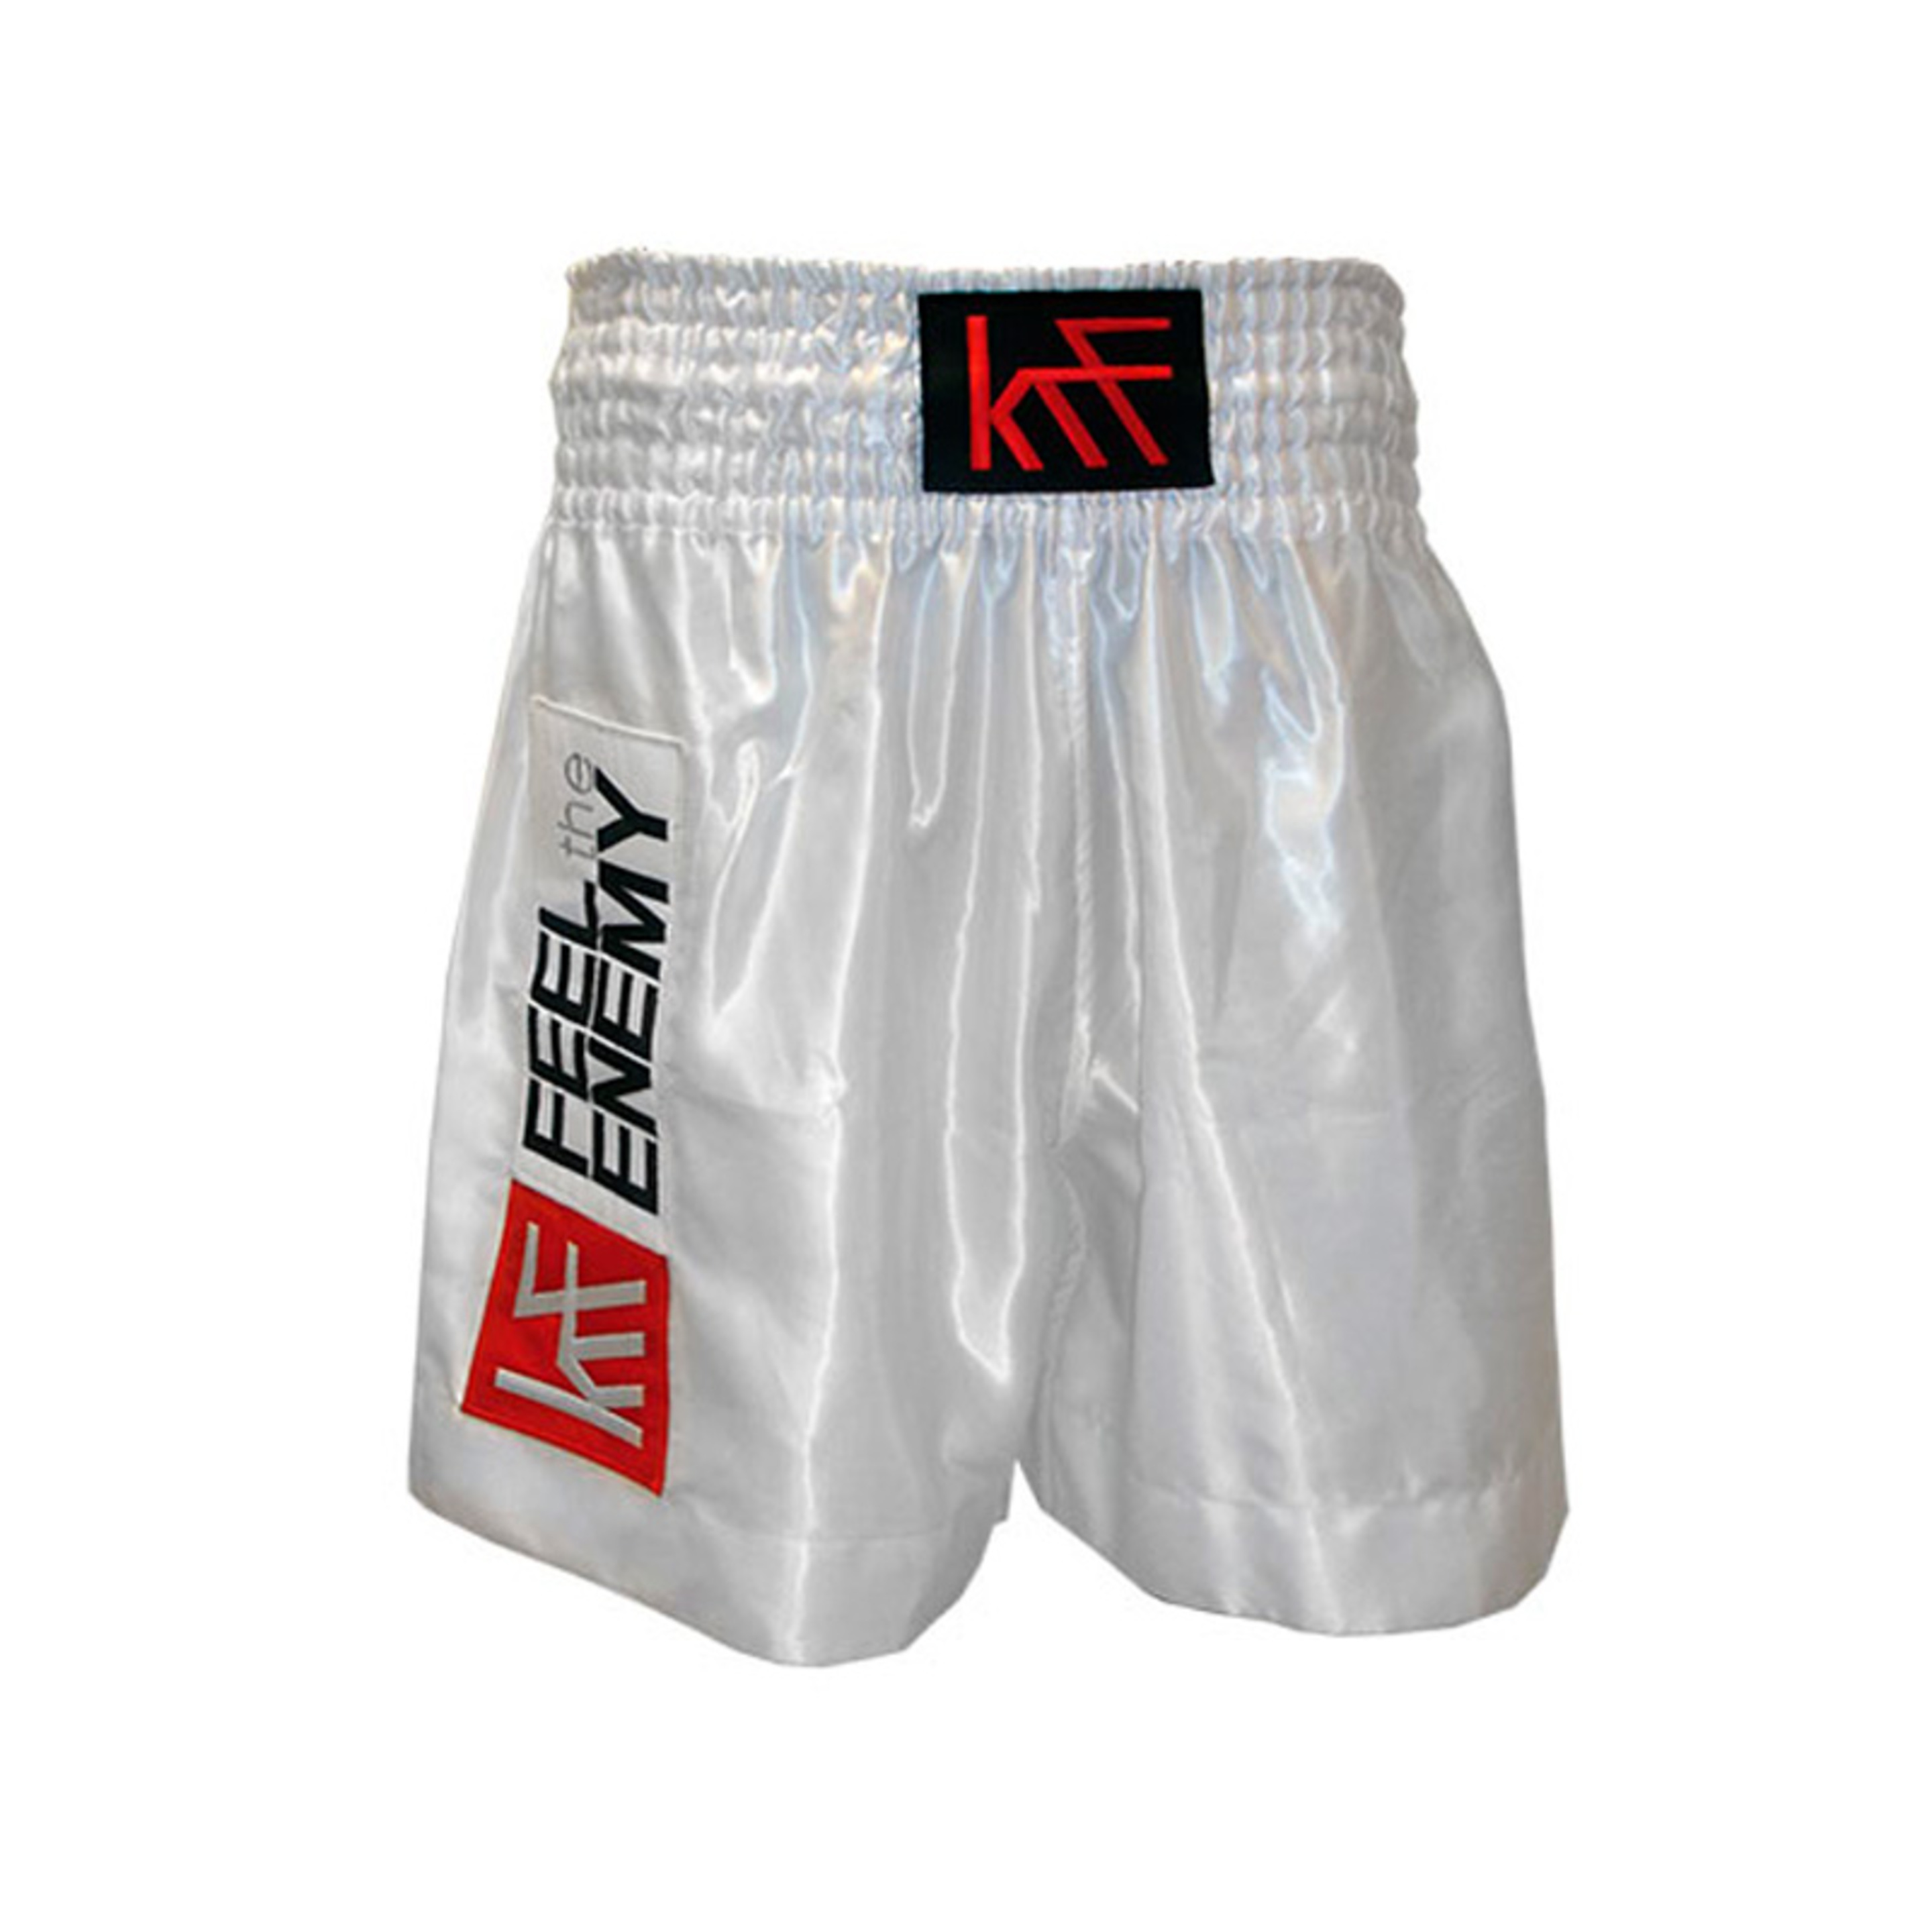 Box Krf Dc Pant Short Boxing Liso Blanco T/l - blanco  MKP